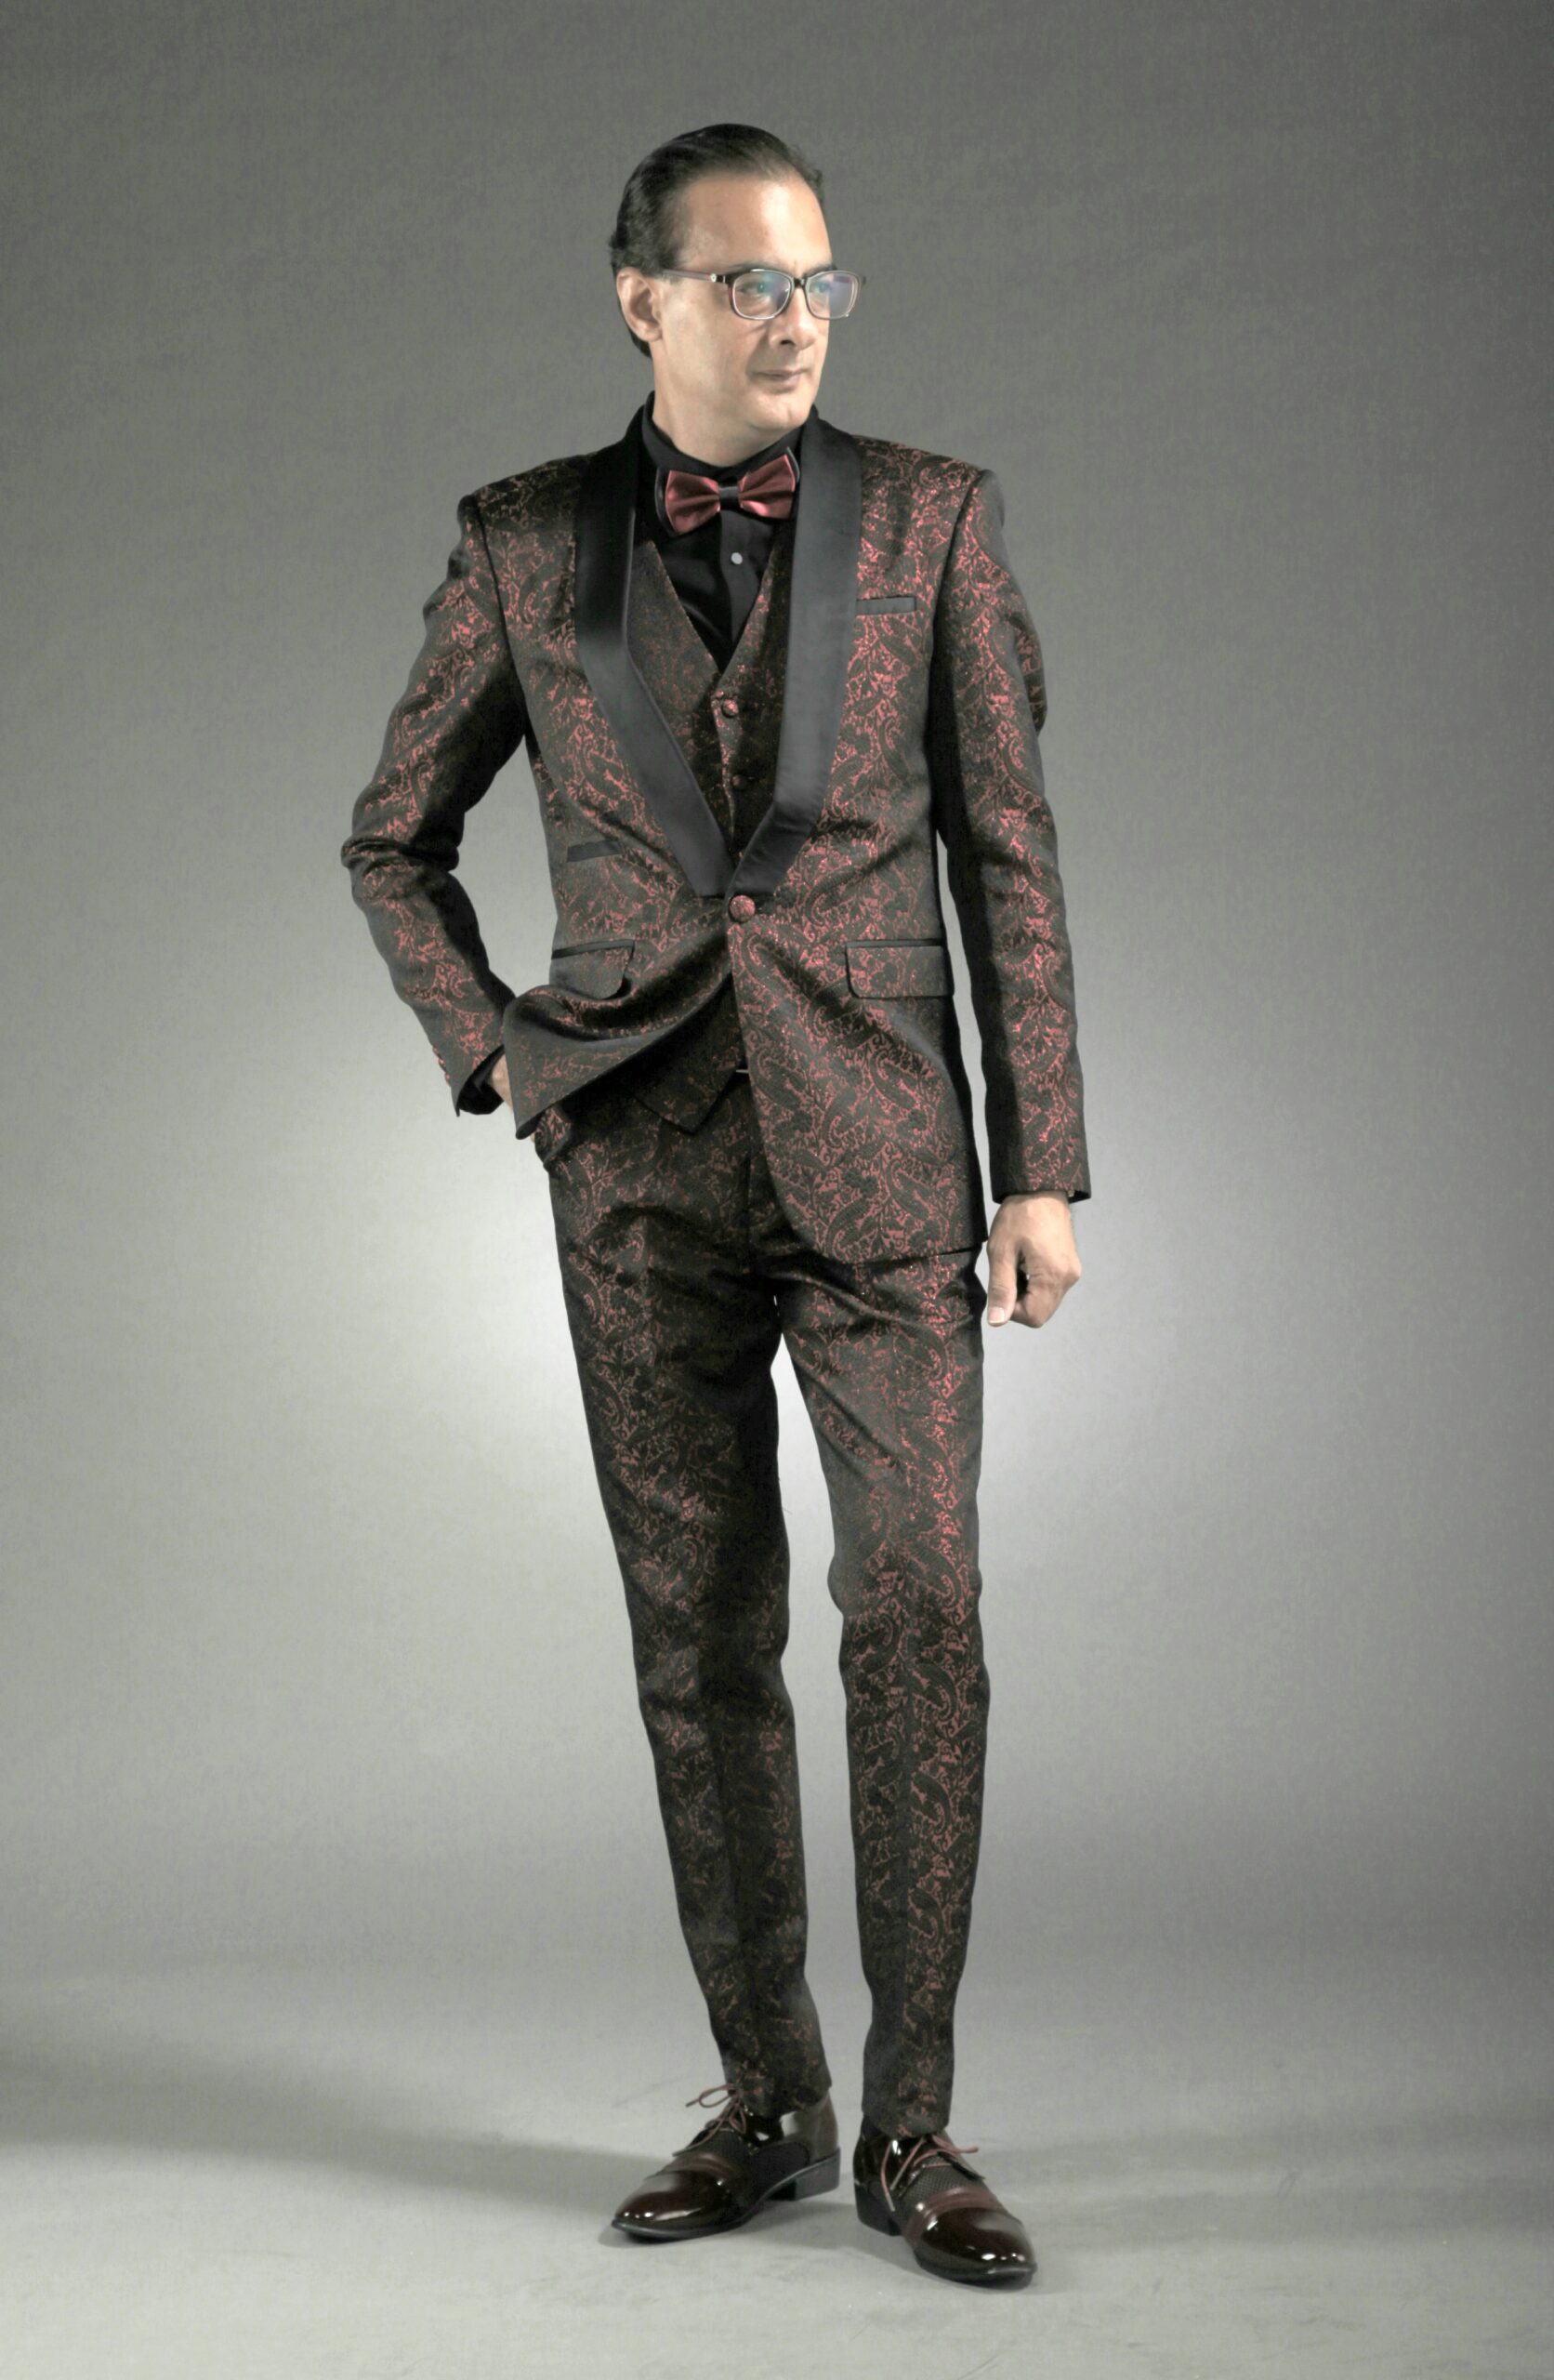 Mst 5069 01 Rent Rental Hire Tuxedo Suit Black Tie Suit Designer Suits Shop Tailor Tailors Singapore Wedding